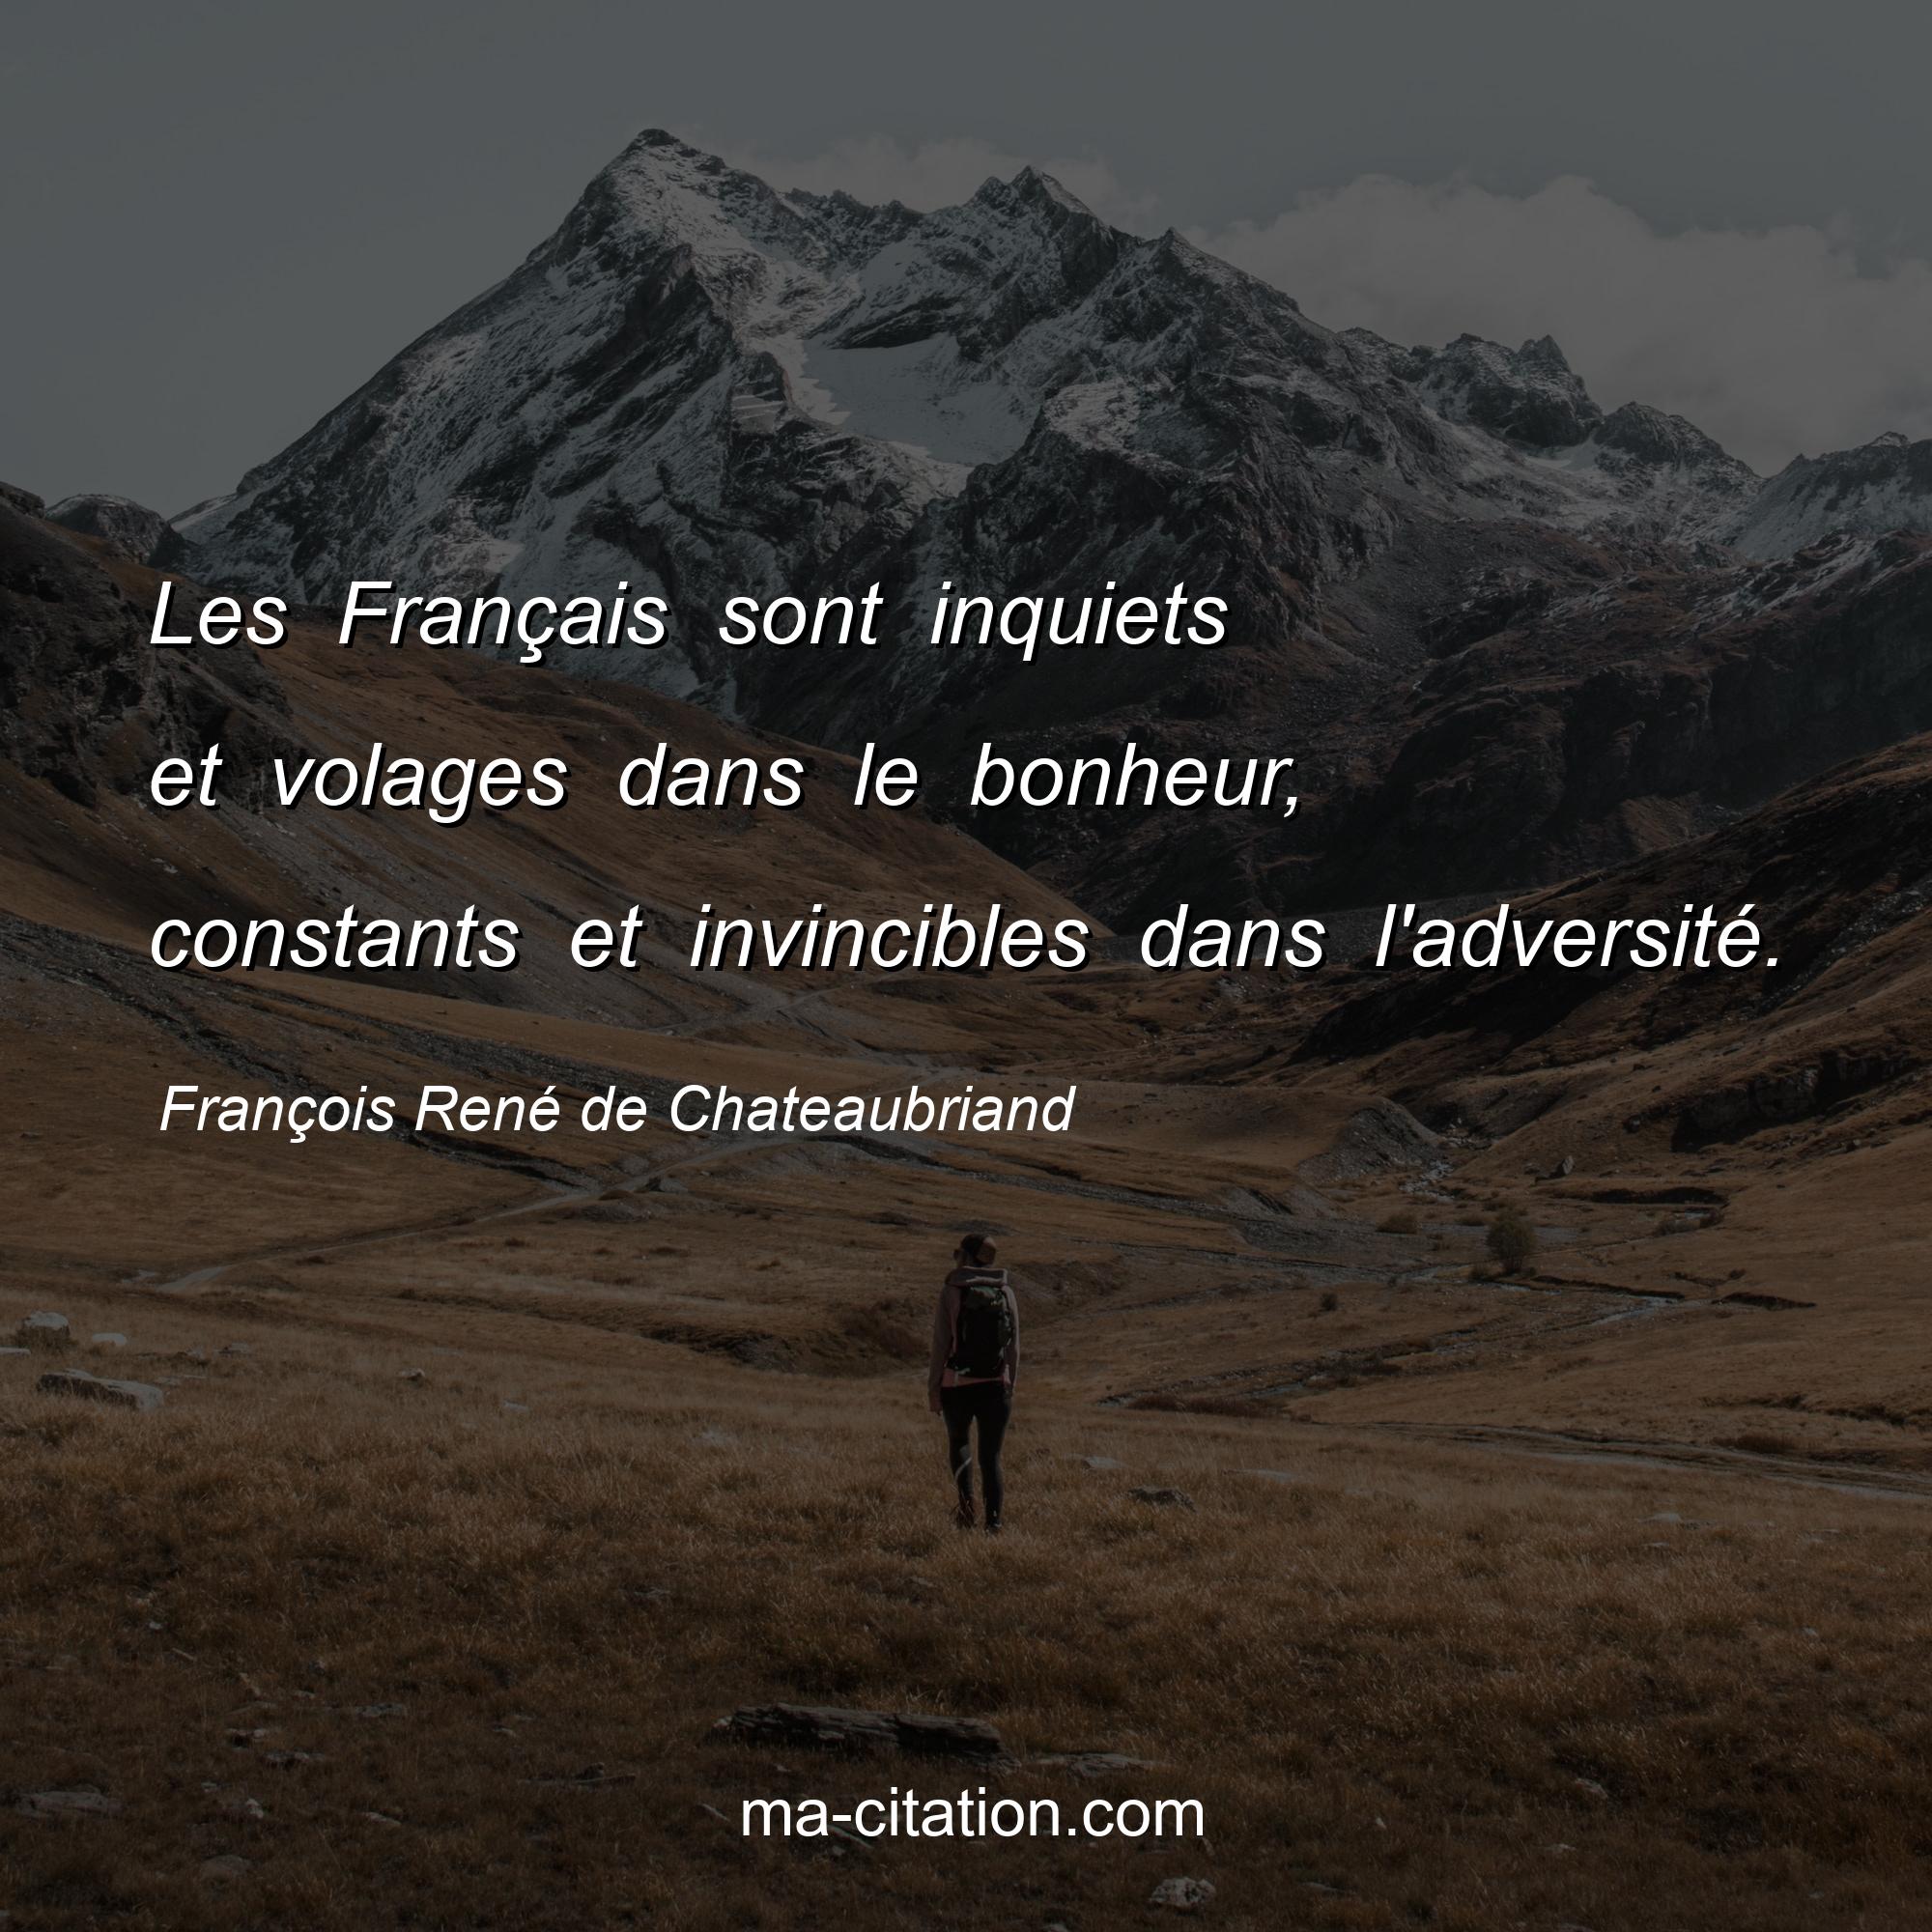 François René de Chateaubriand : Les Français sont inquiets et volages dans le bonheur, constants et invincibles dans l'adversité.